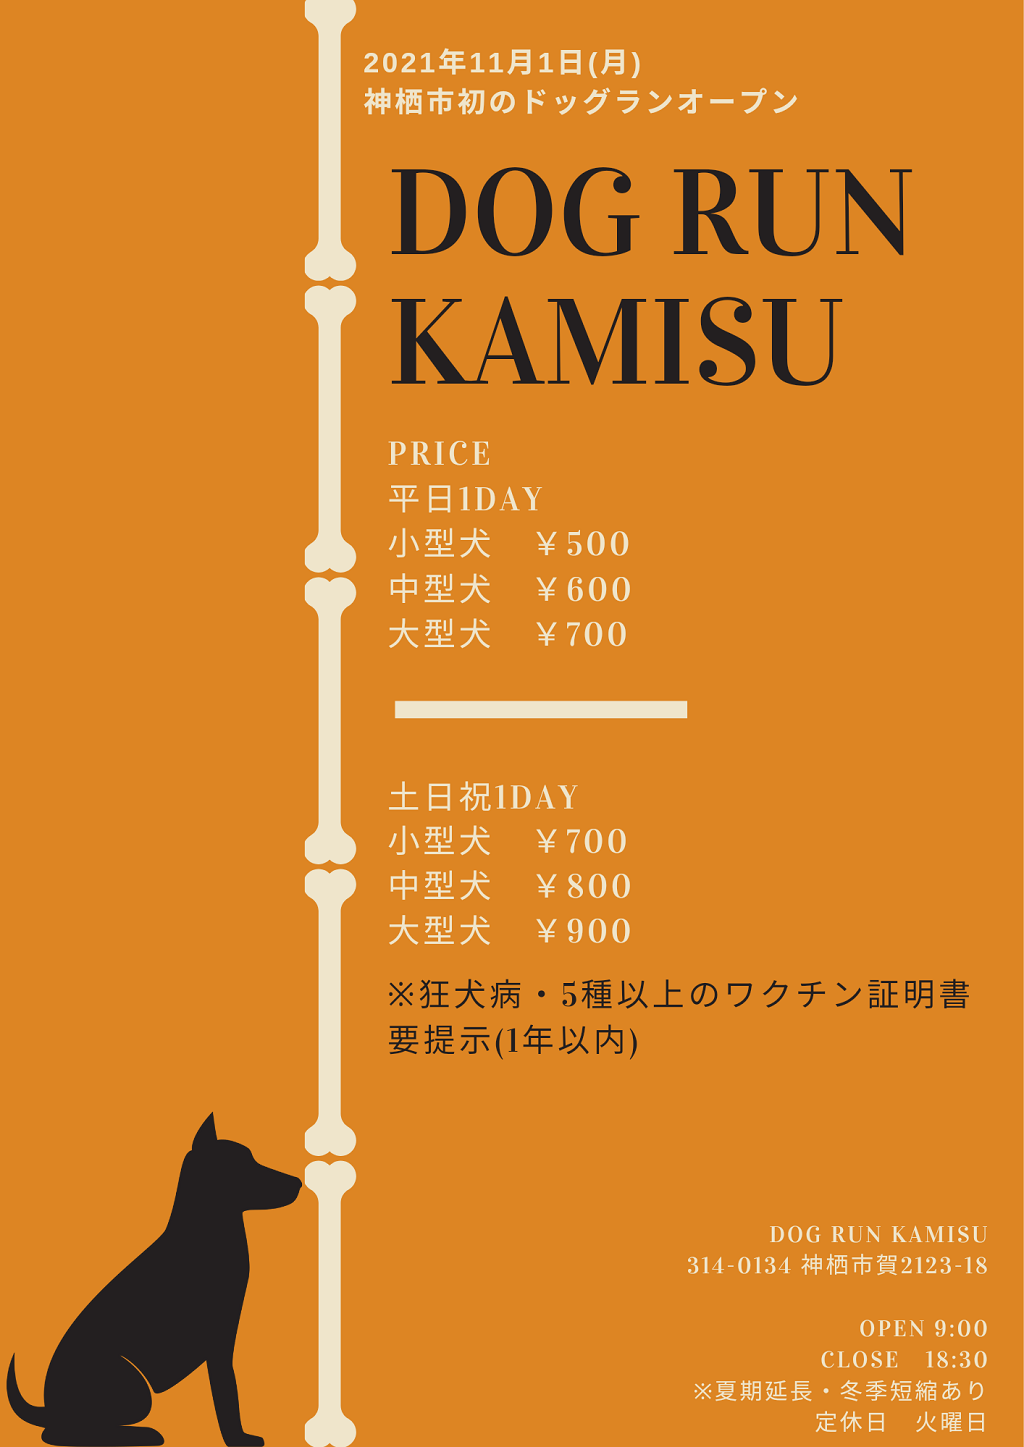 神栖市 神栖市初のドッグラン Dog Run Kamisu が11月にオープン Locoty ロコティ 神栖 鹿嶋 潮来 鹿行地域の情報サイト